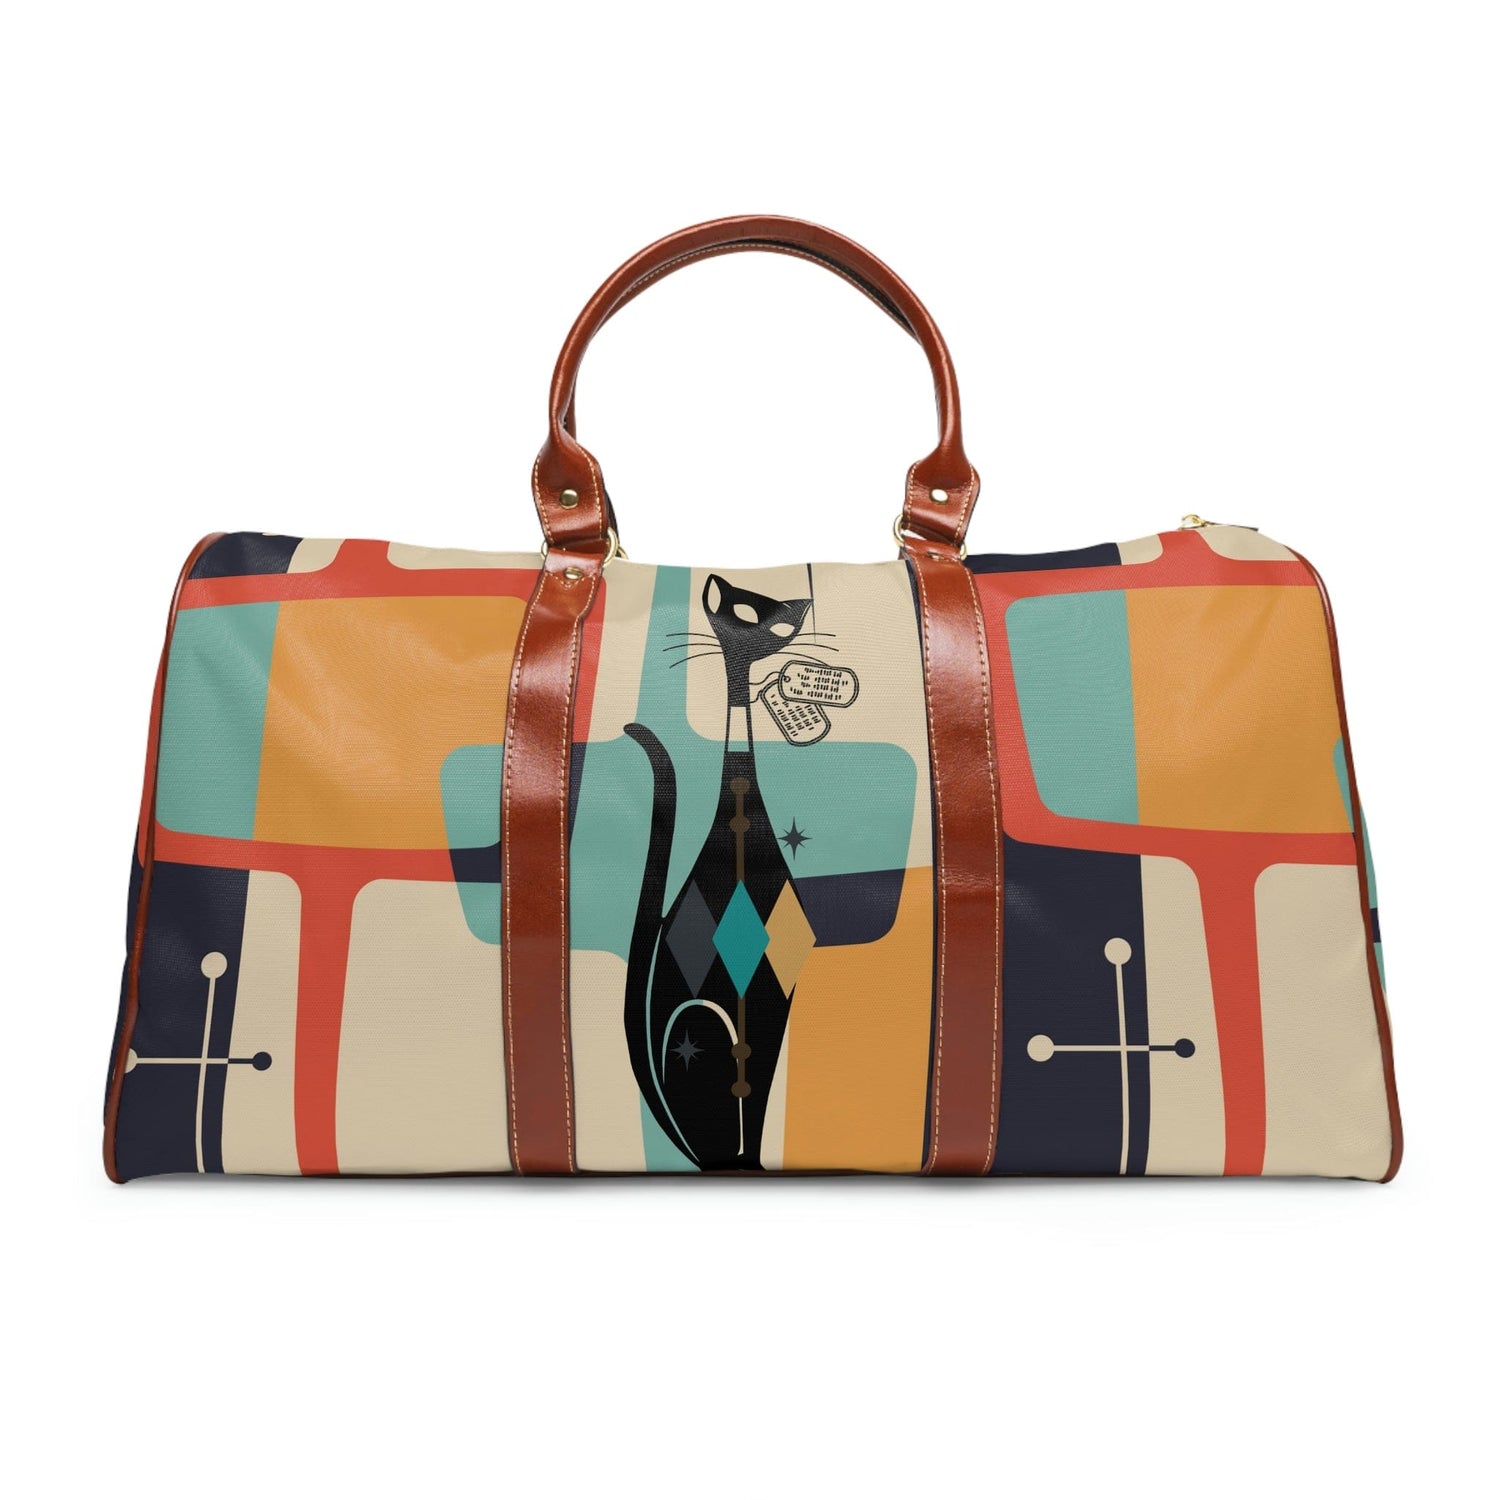 Atomic Cat, Mid Century Modern, Luggage, Travel Bag, Weekender